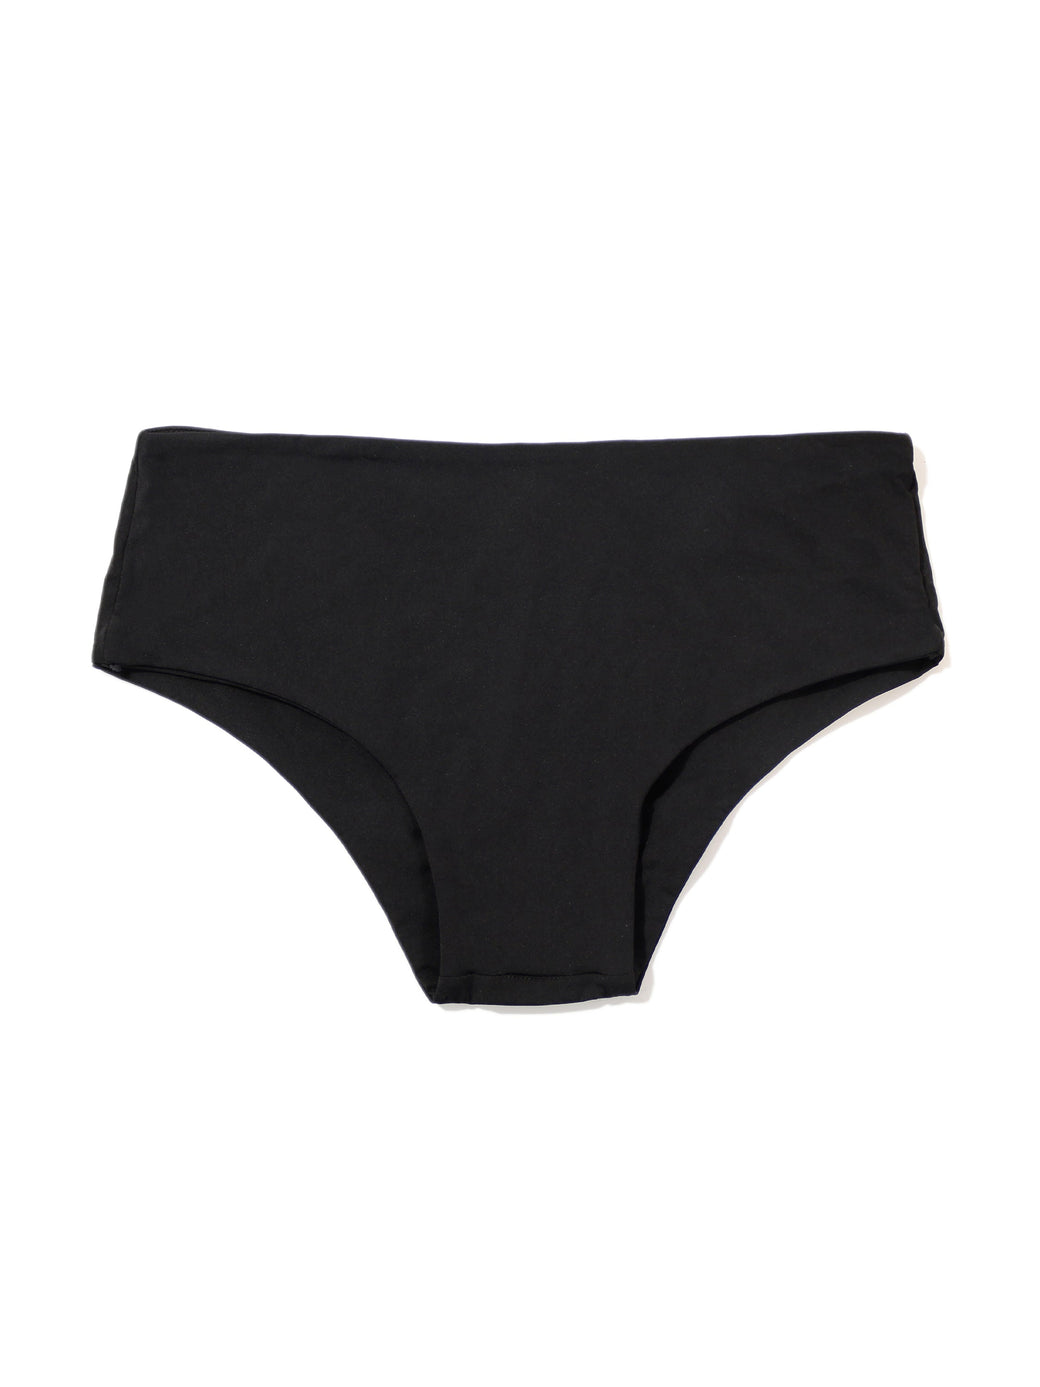 Boyshort Swimsuit Bottom Black